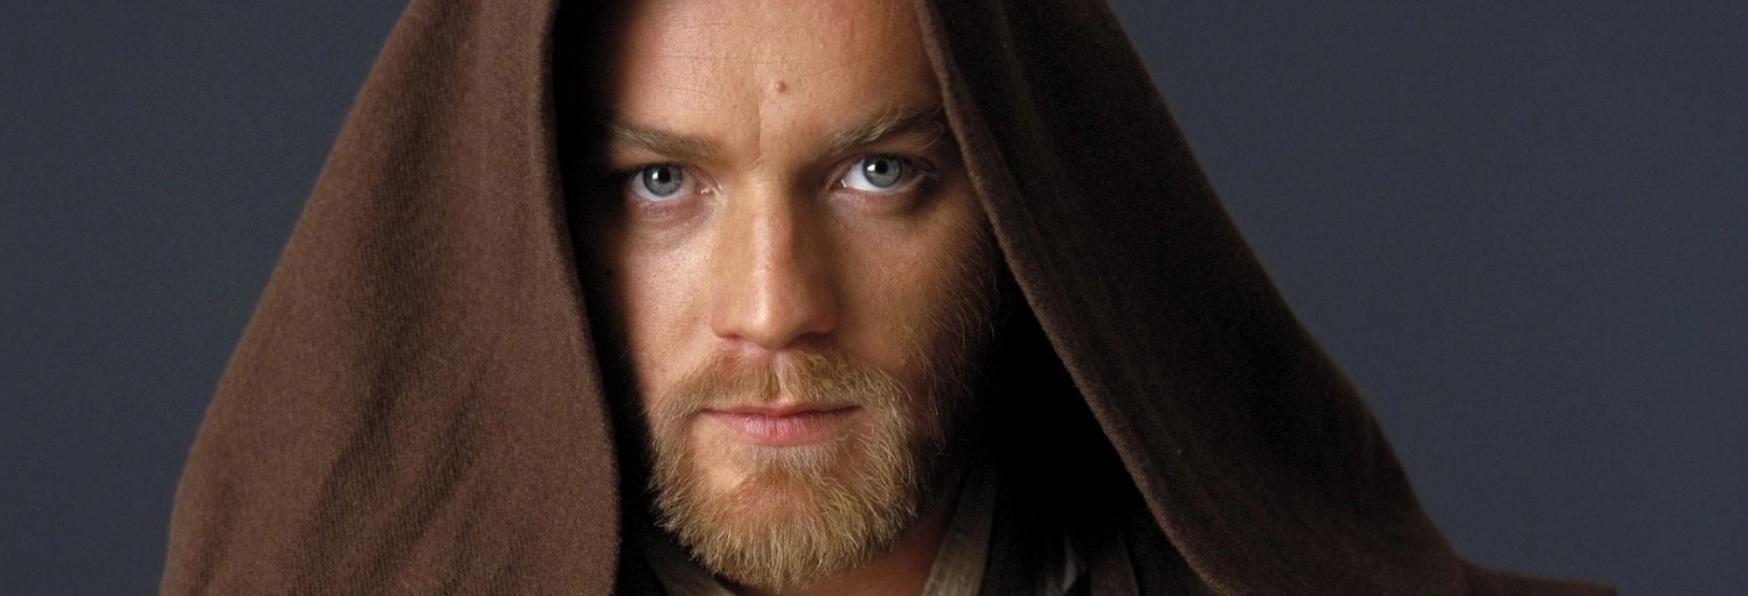 Obi-Wan Kenobi: una 2° Stagione non è Esclusa! Ecco le parole della Regista